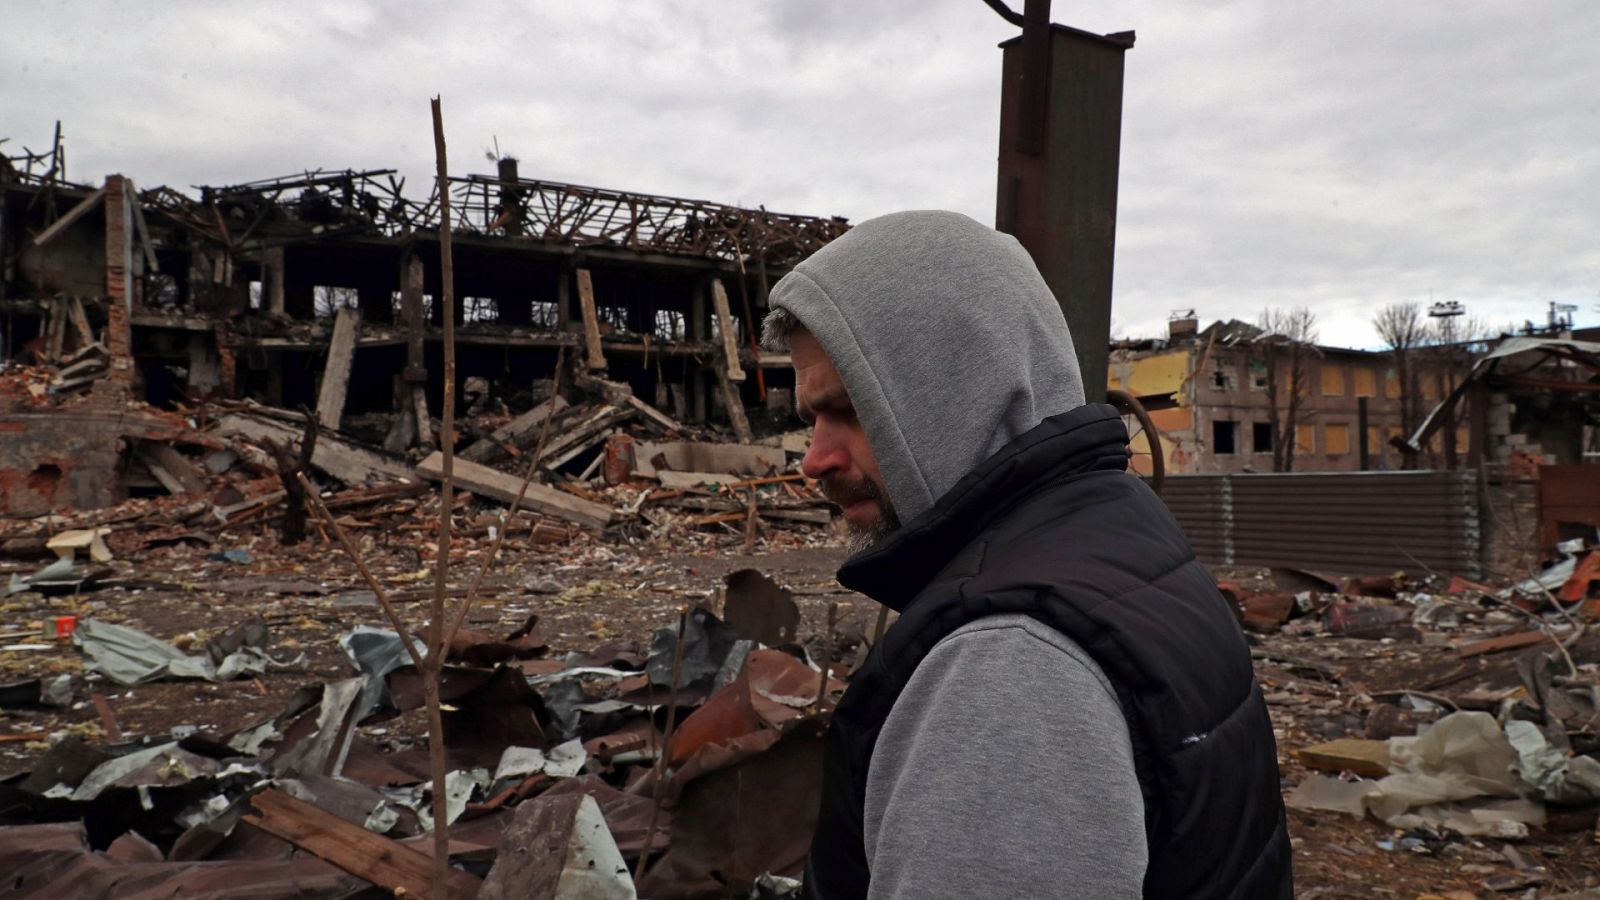 Los bombardeos siguen sobre Kiev más de un mes después: "Ya ni siquiera me sorprendo"